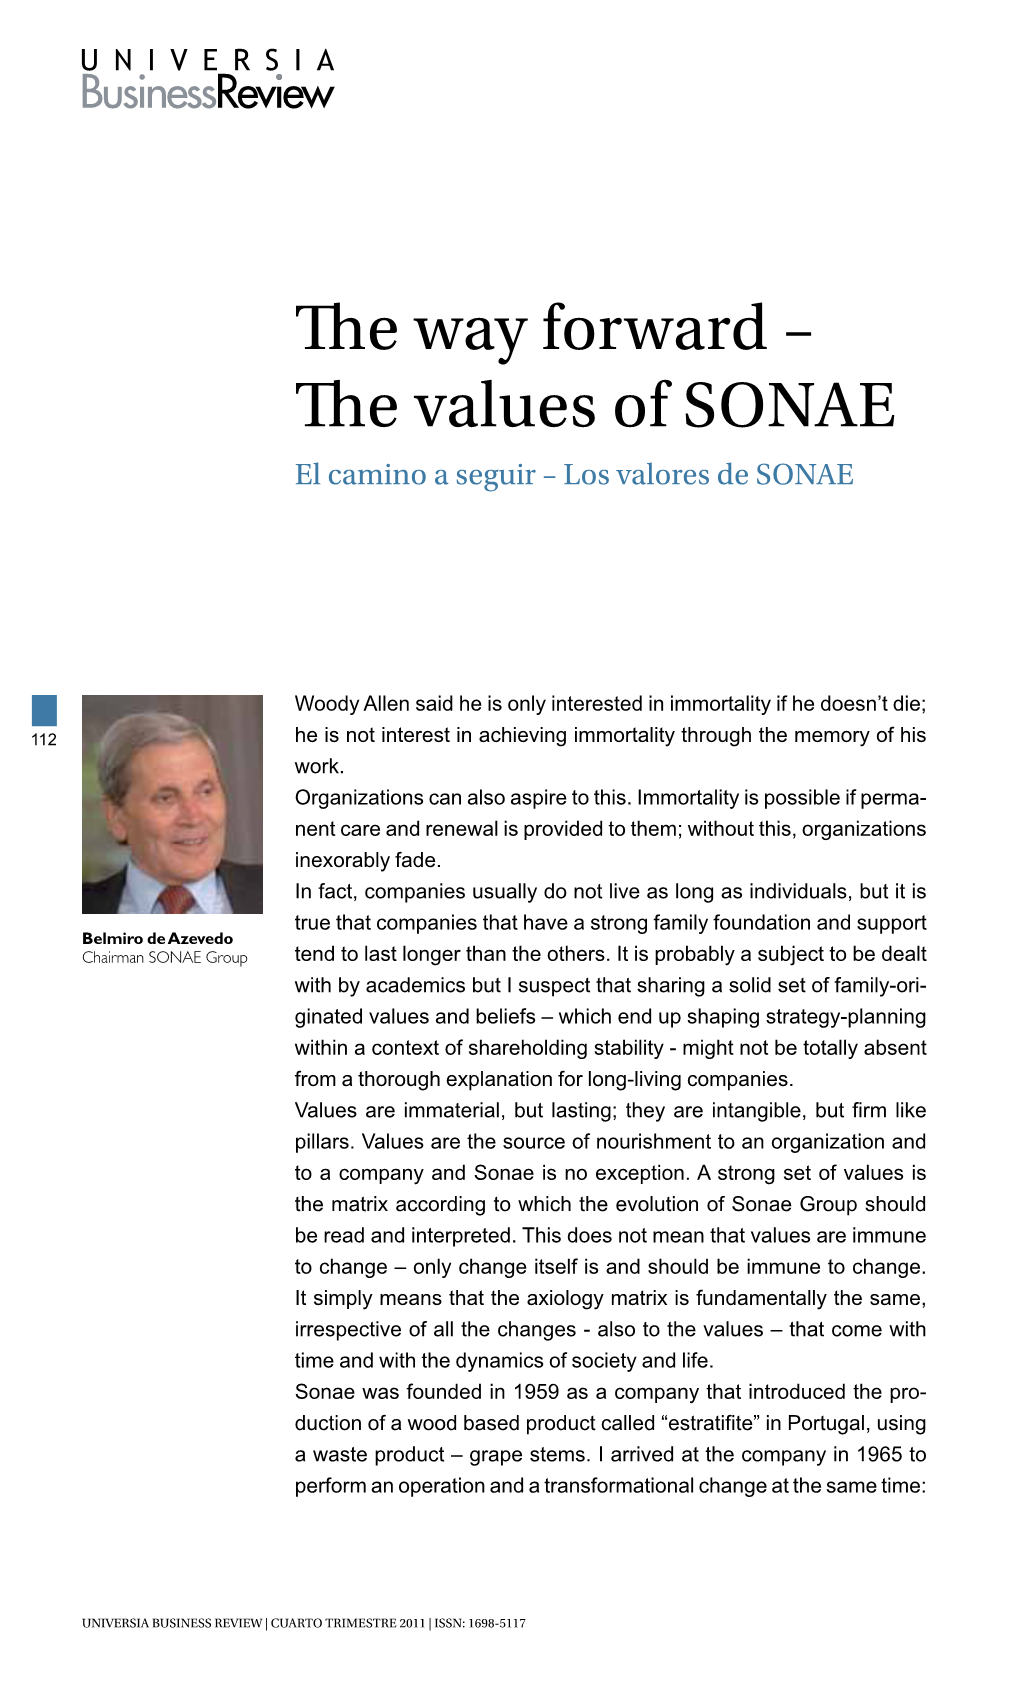 The Values of SONAE El Camino a Seguir – Los Valores De SONAE